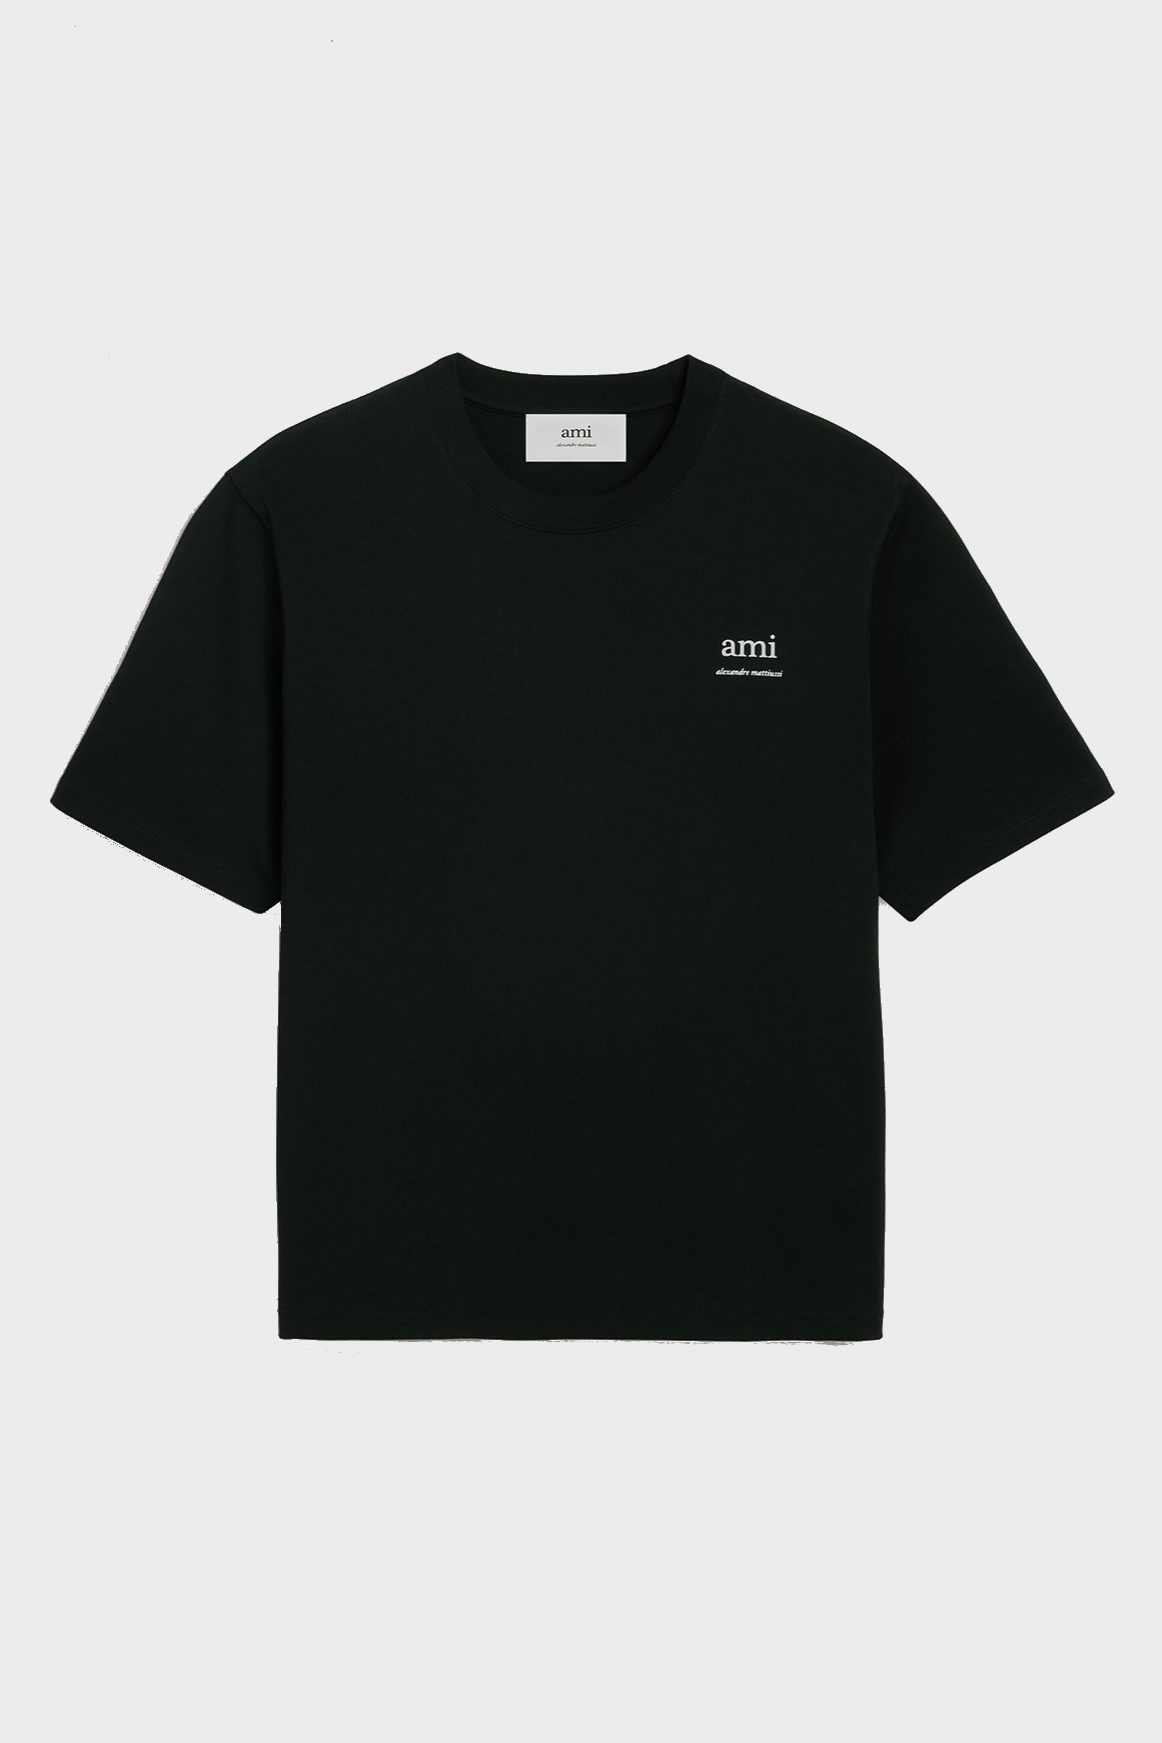 AMI PARIS Alexandre Mattuissi Boxy Fit T-Shirt in Black